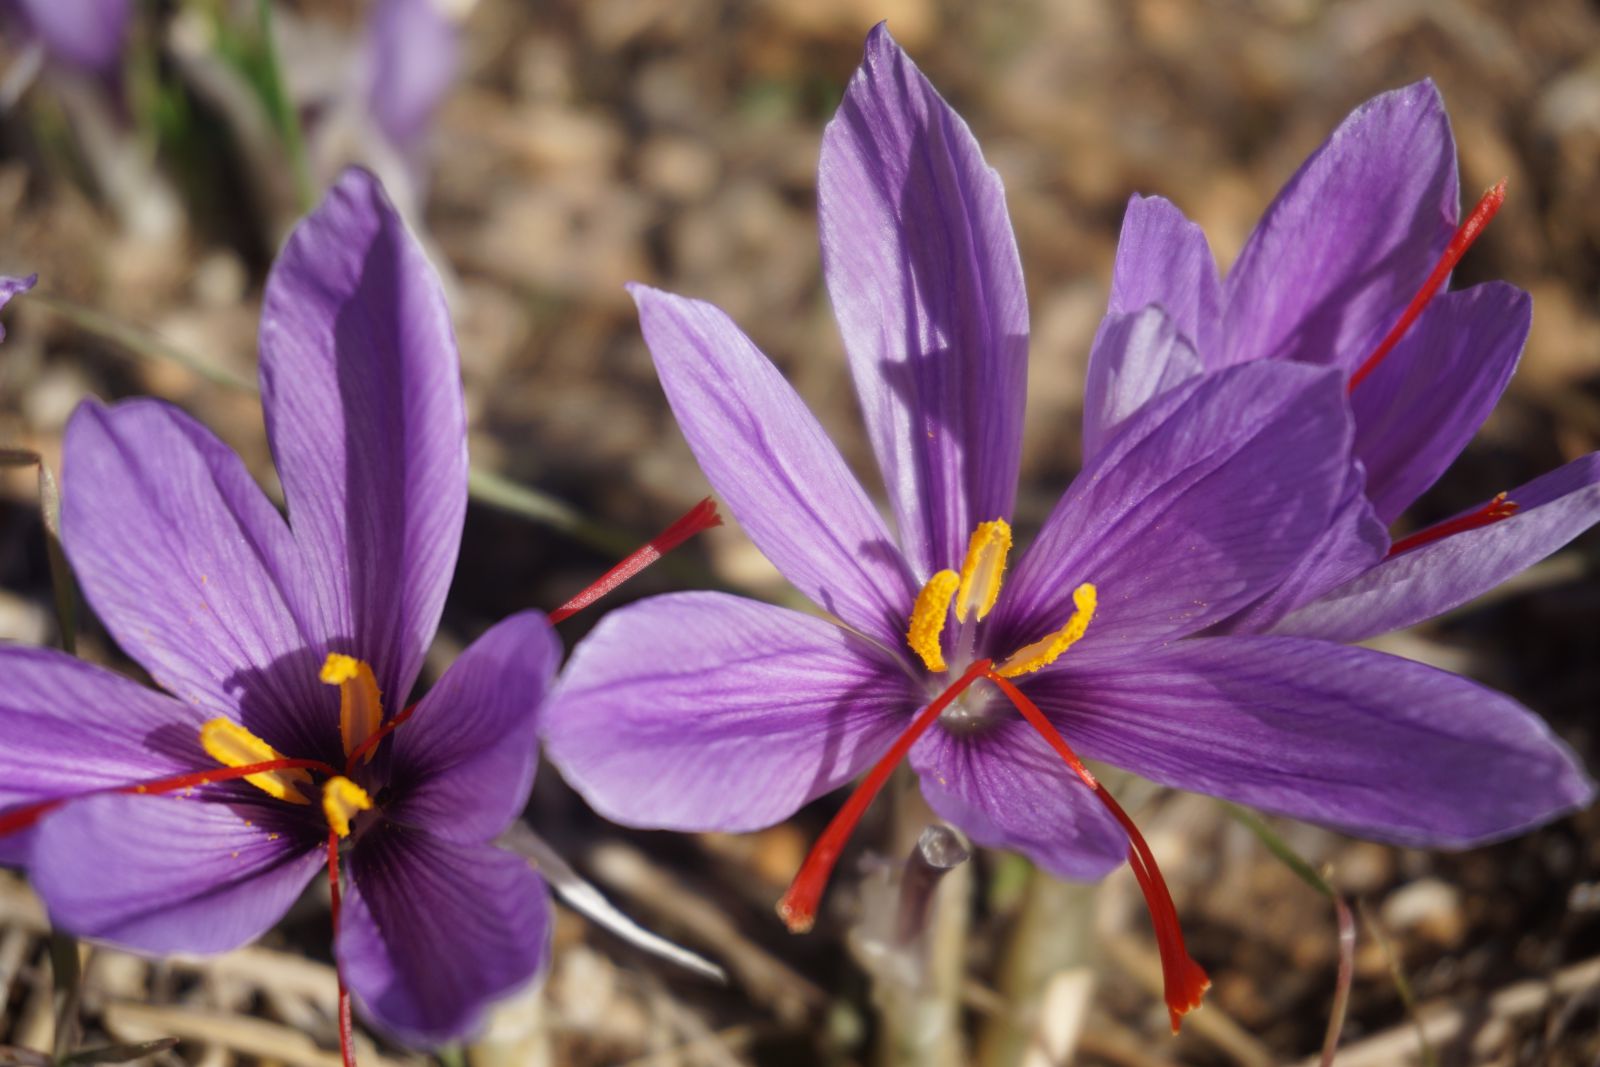 1g Saffron – Bí quyết sử dụng và lưu giữ tinh túy của loại gia vị quý hiếm này